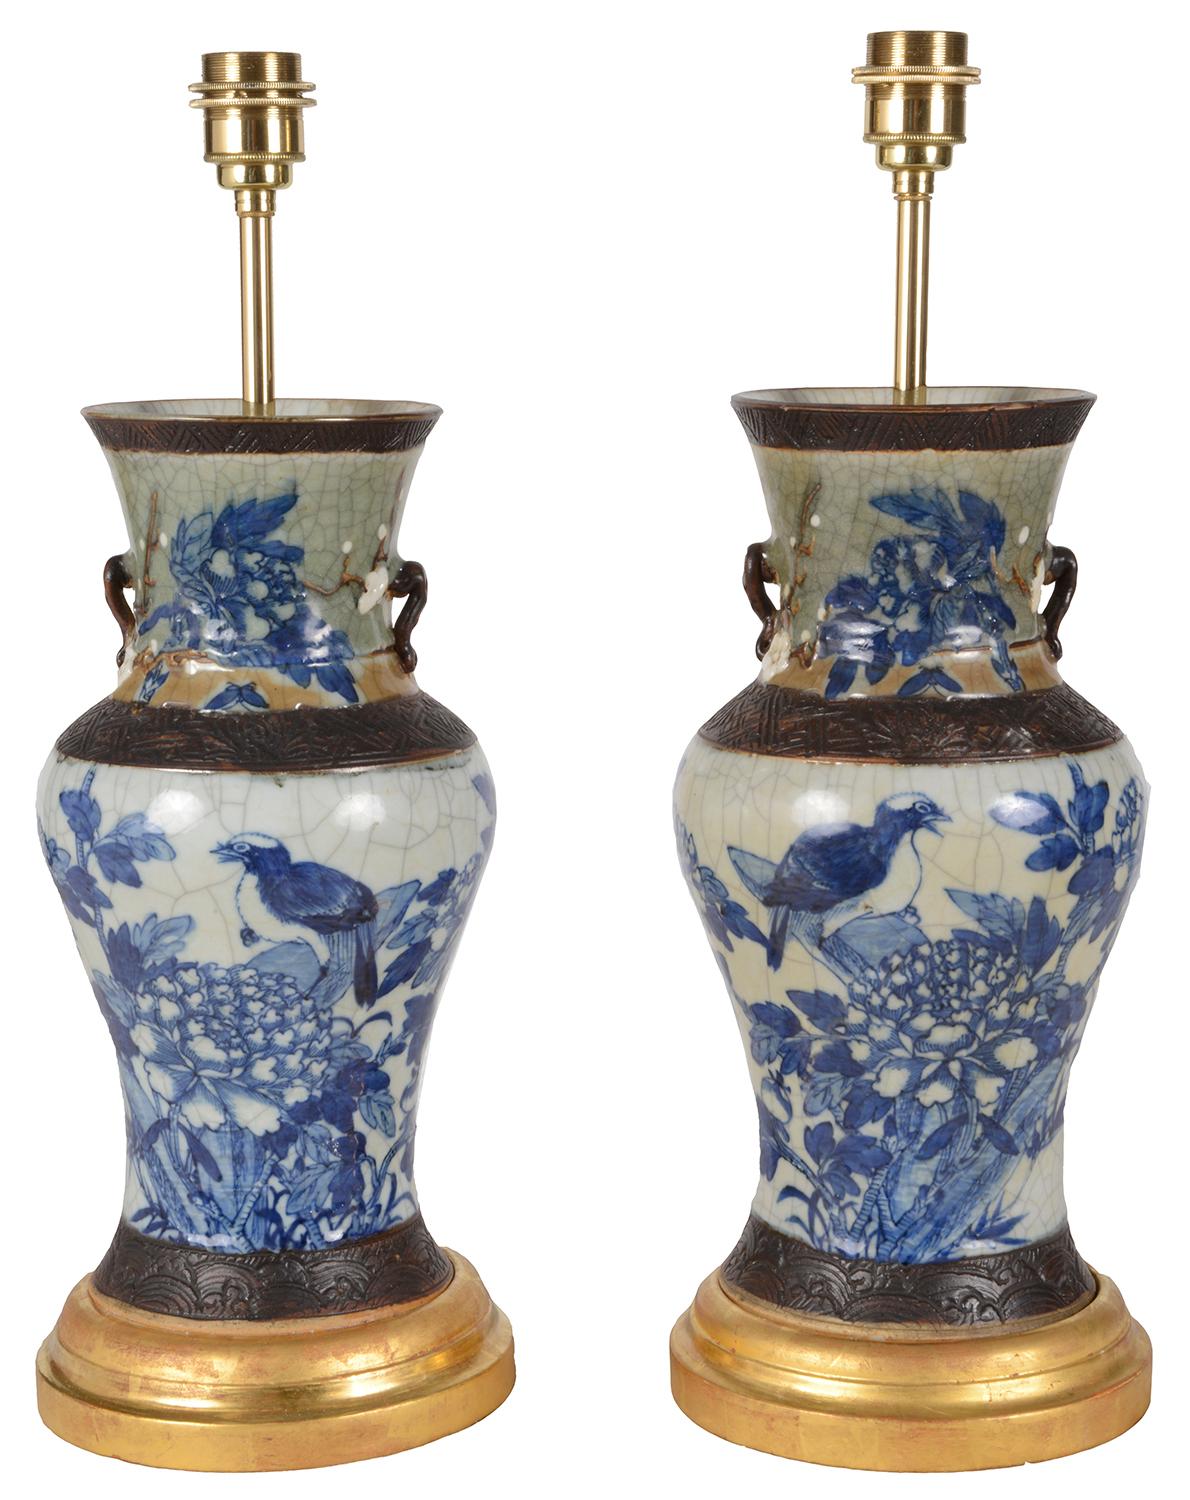 Paire de vases chinois en céramique bleue et blanche craquelée de la fin du XIXe siècle, chacun présentant des scènes de colombes assises parmi des fleurs et des feuillages, peintes à la main entre des planches gravées en marron.